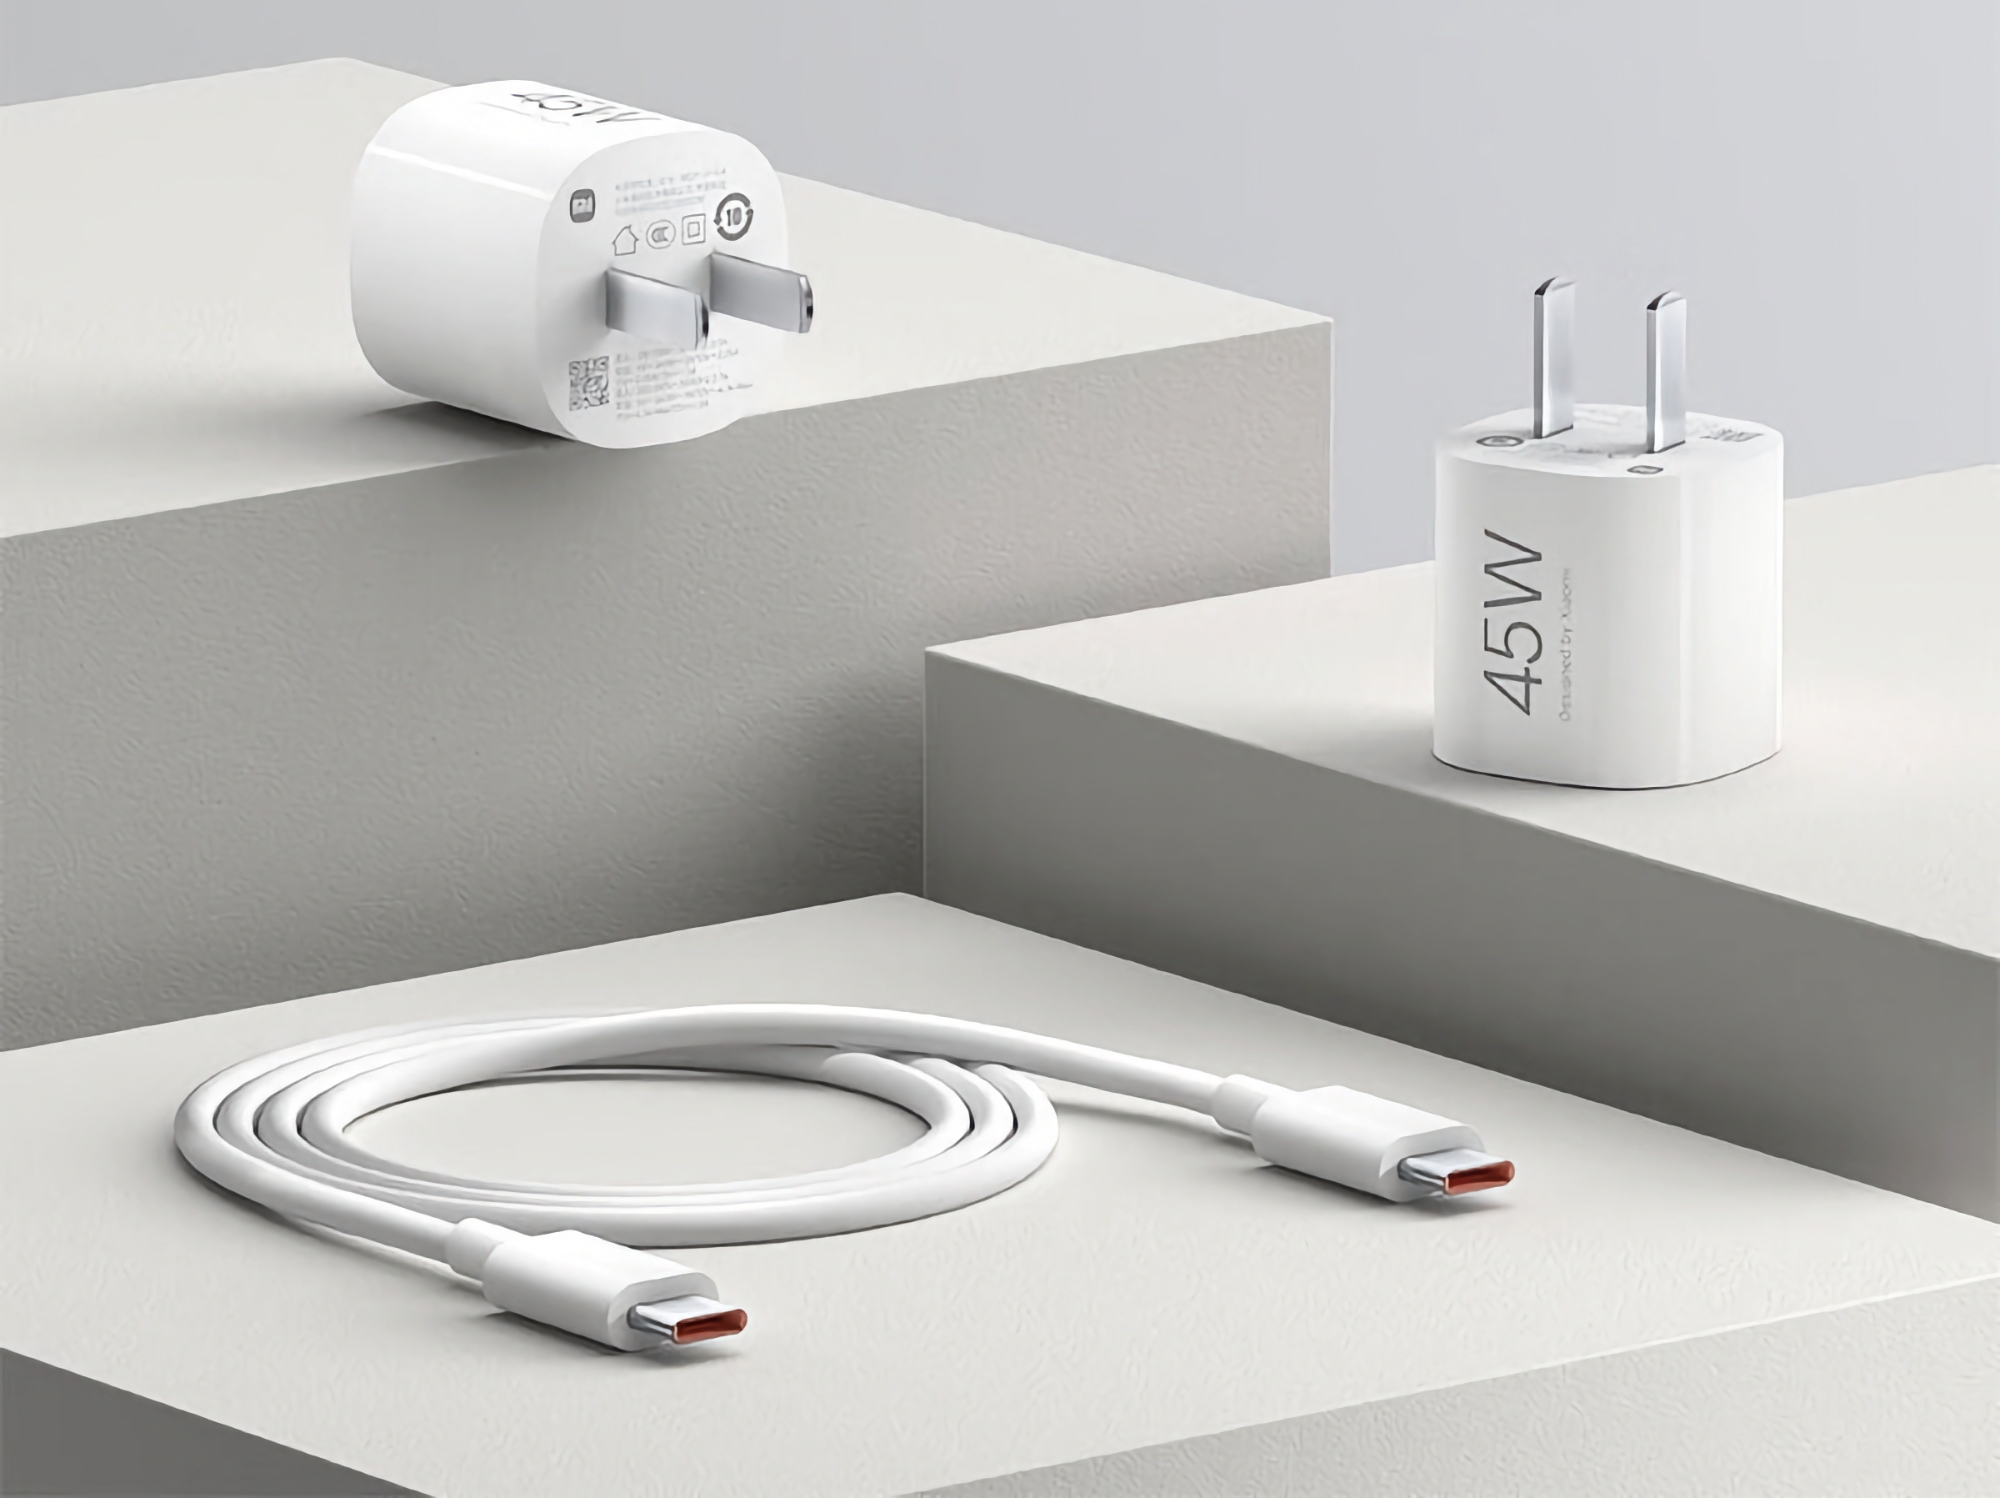 Xiaomi представила GaN-зарядку на 45 Вт с кабелем USB-C в комплекте и ценой $8